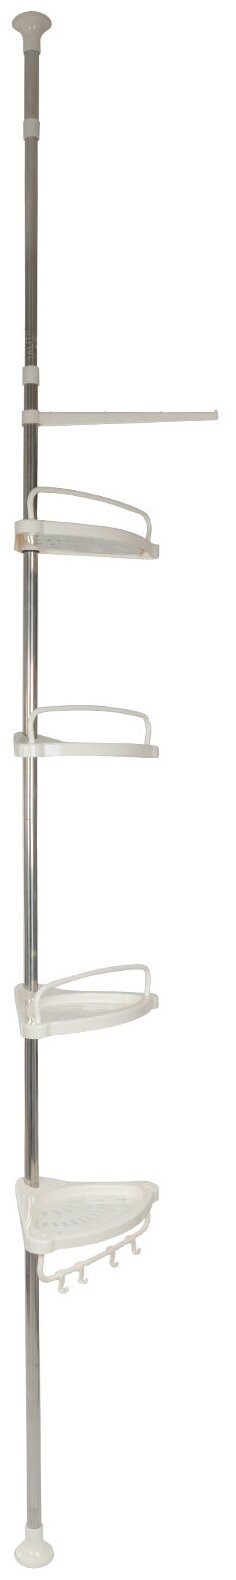 Полка для ванной угловая Talita Style 4-х ярусная телескопическая полка с крючками с держателем для полотенец белая от 12 до 31 м